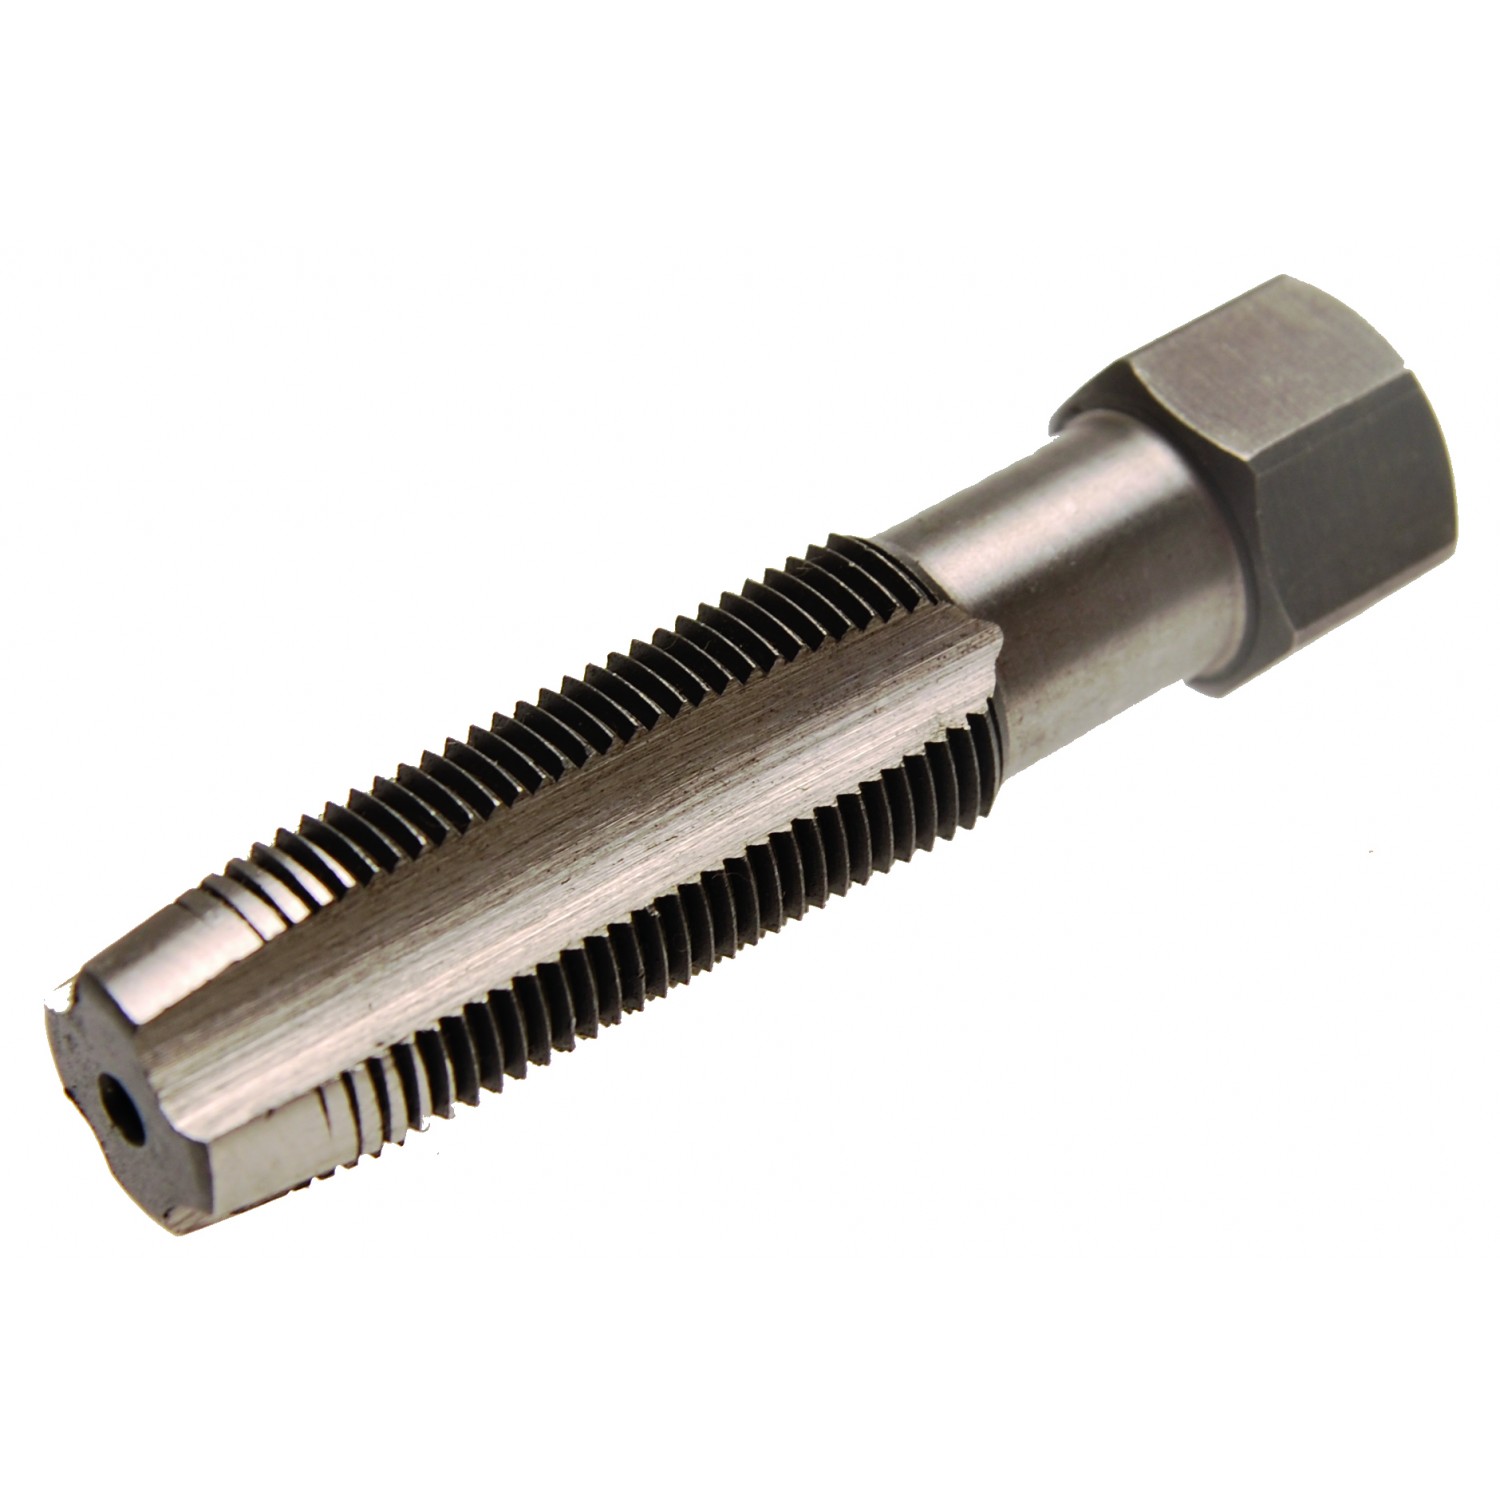 149-19 BGS M14 x 1,25 x 19 mm 19 mm Spark Plug Thread Repair Inserts